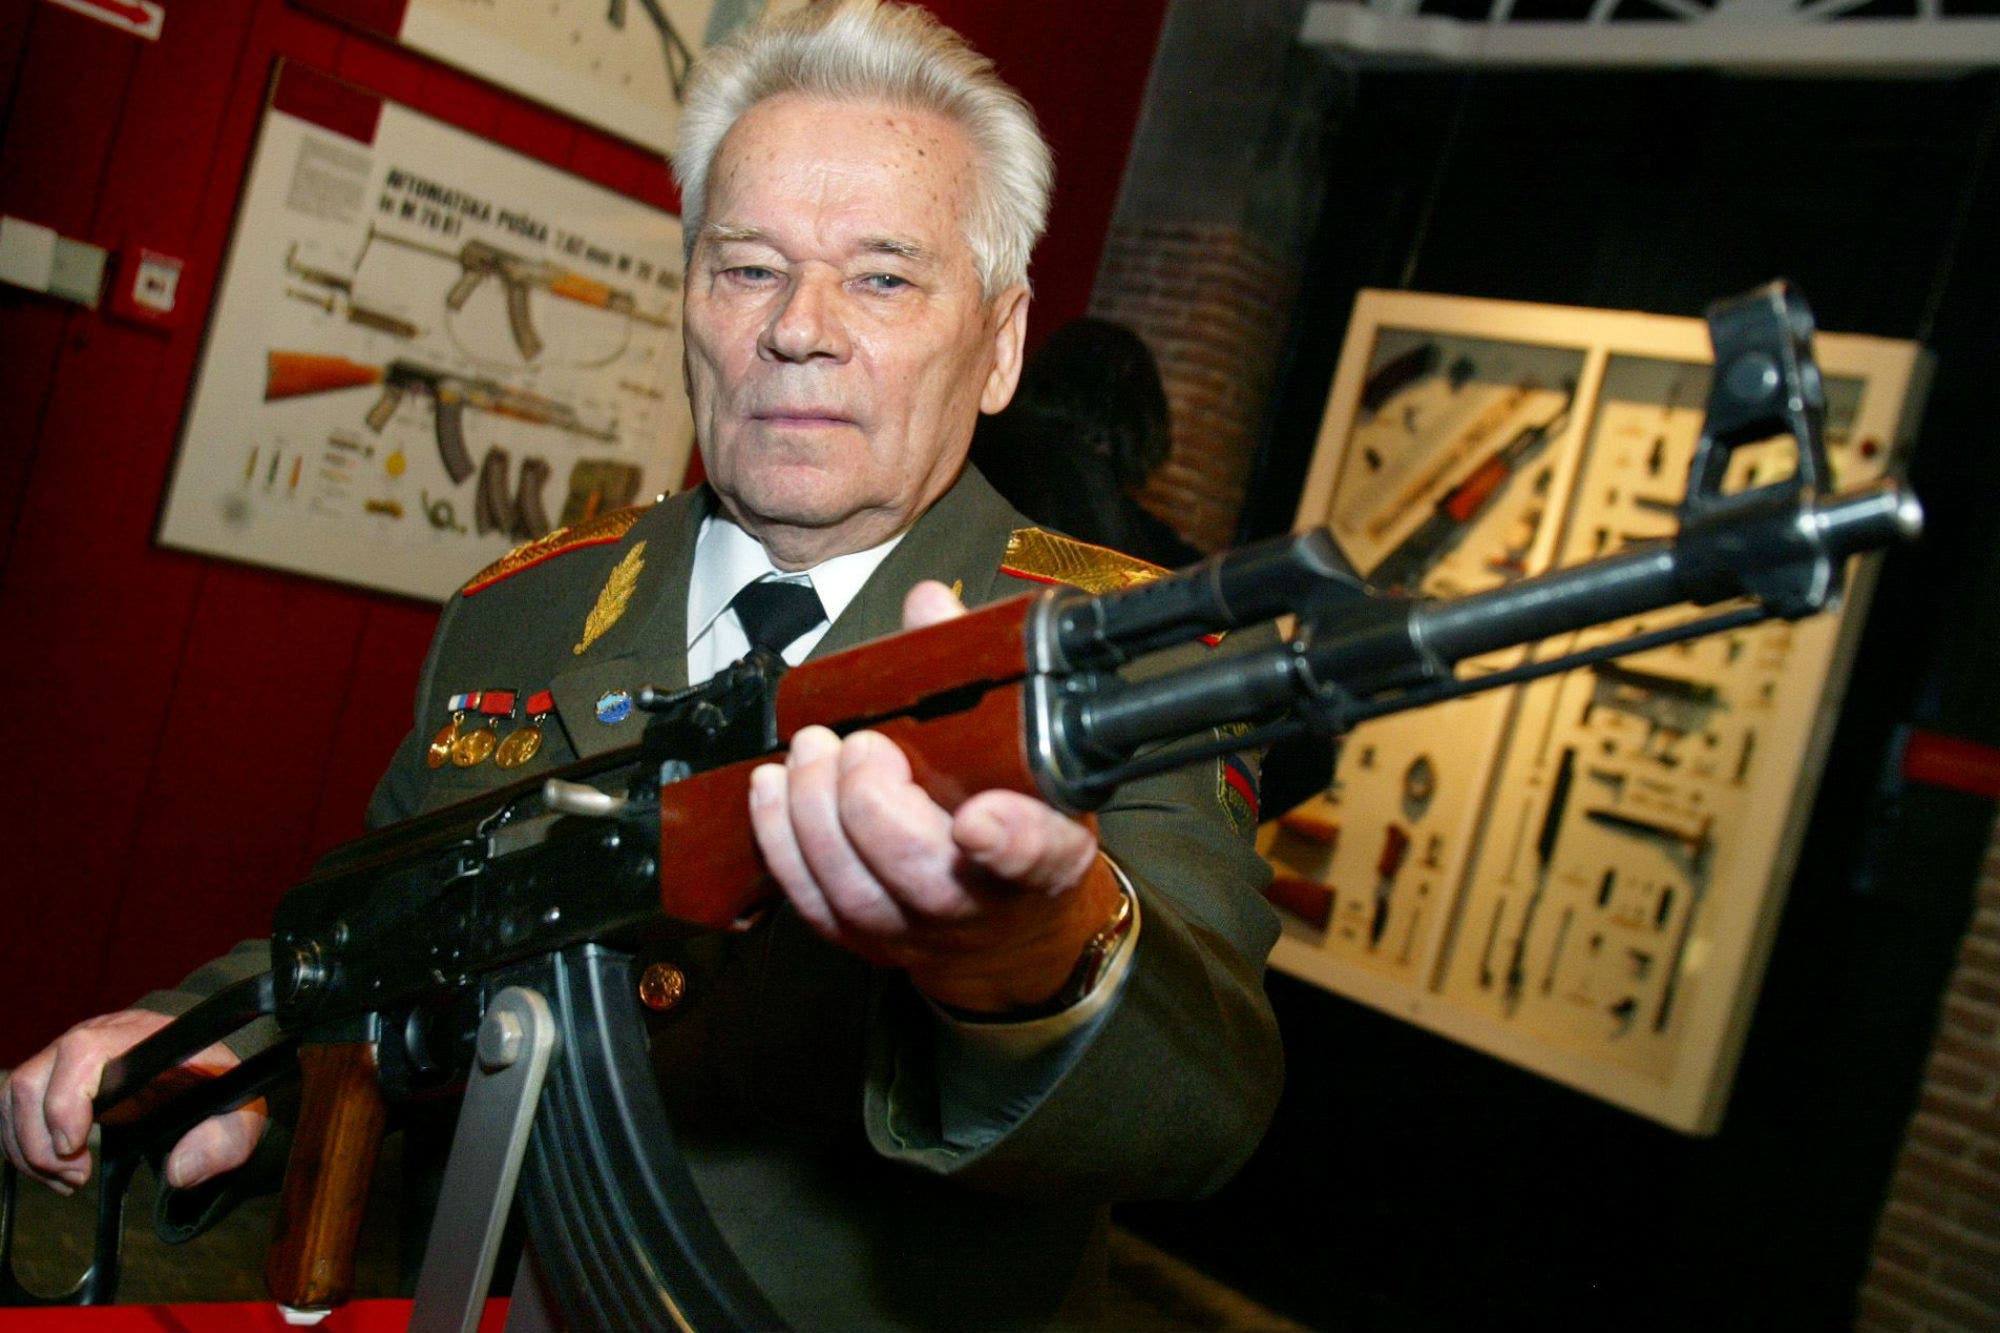 В Удмуртии опубликовали архивное издание «Оружейник мира», посвященное Михаилу Калашникову